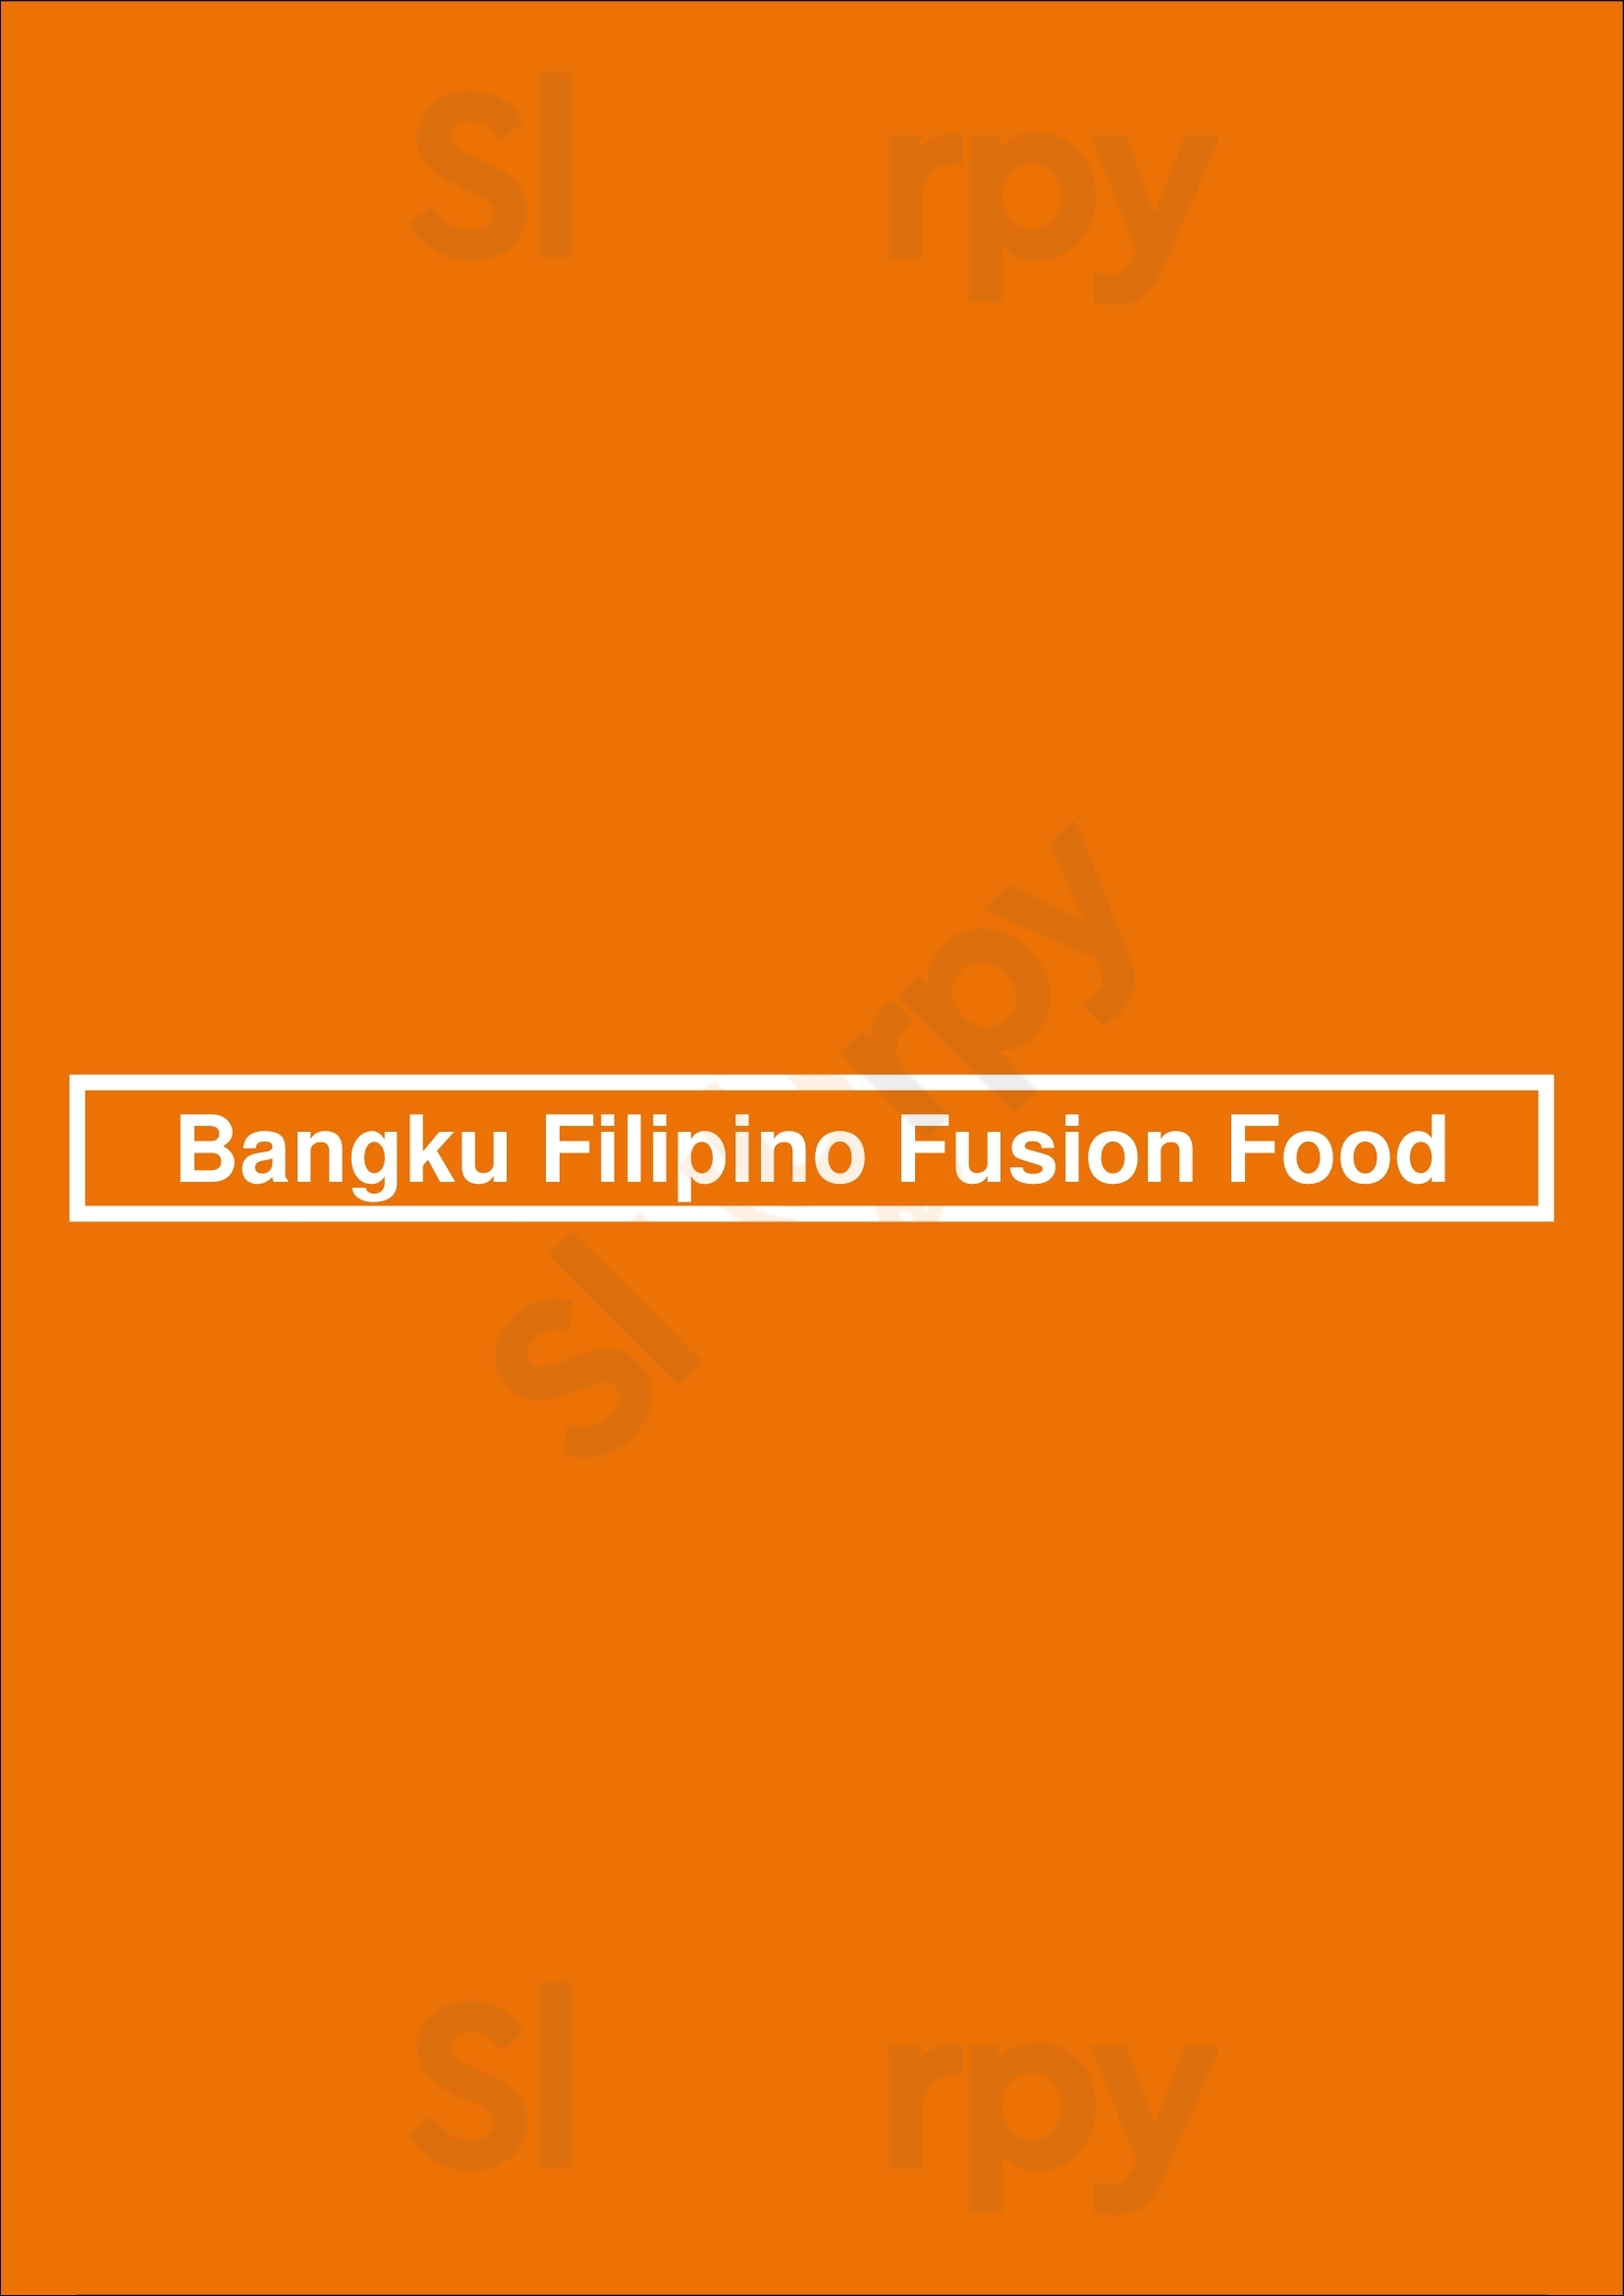 Bangku Filipino Fusion Food Toronto Menu - 1